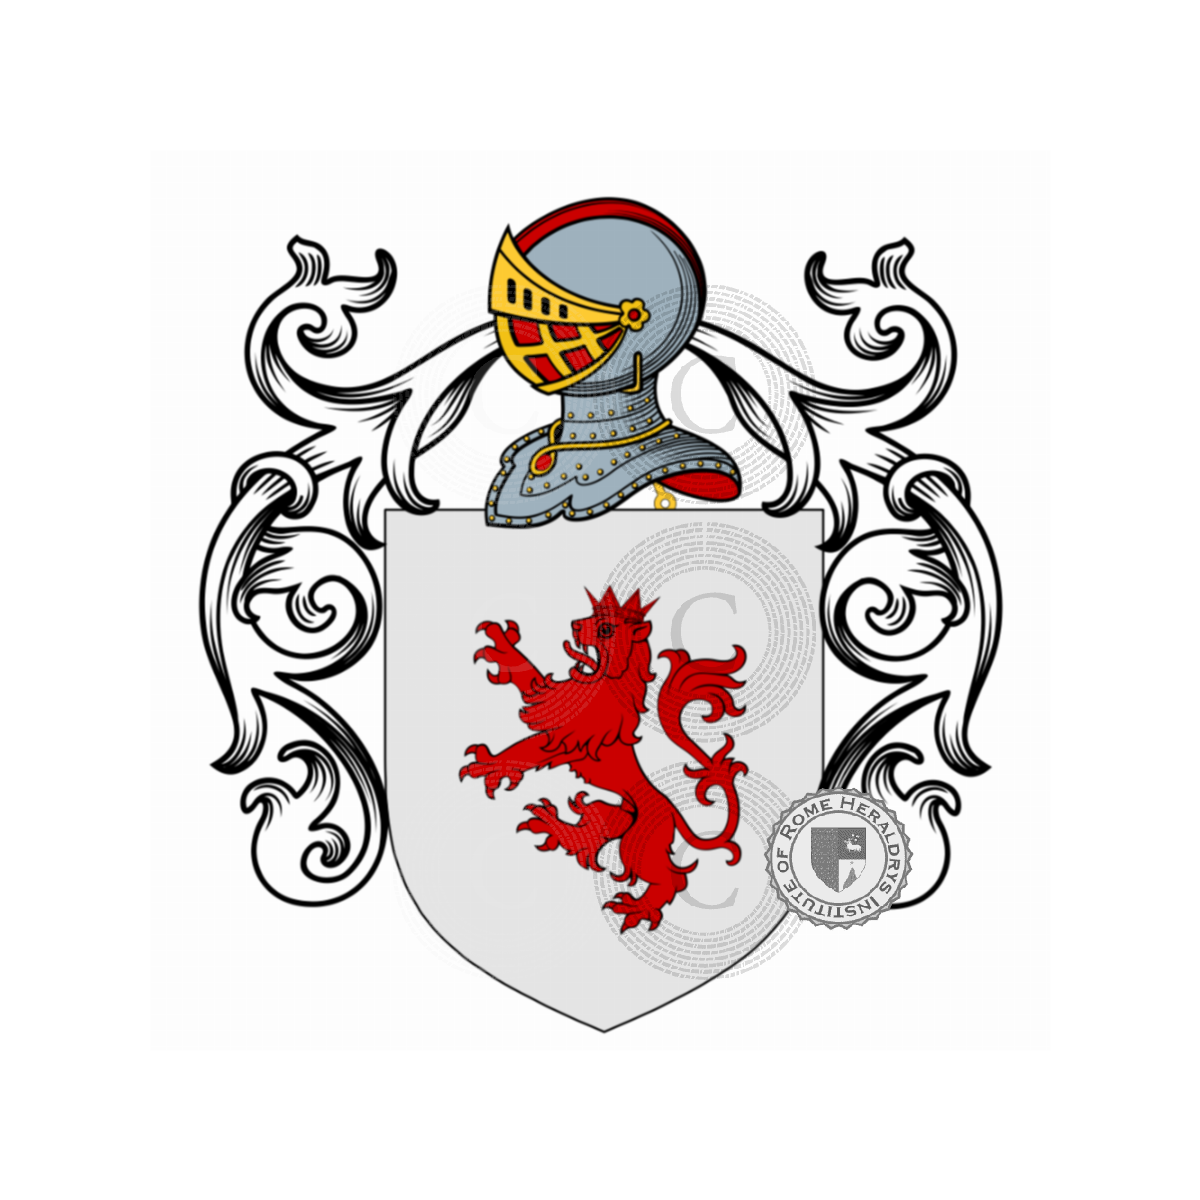 Coat of arms of familyBreschi, Breschi,David